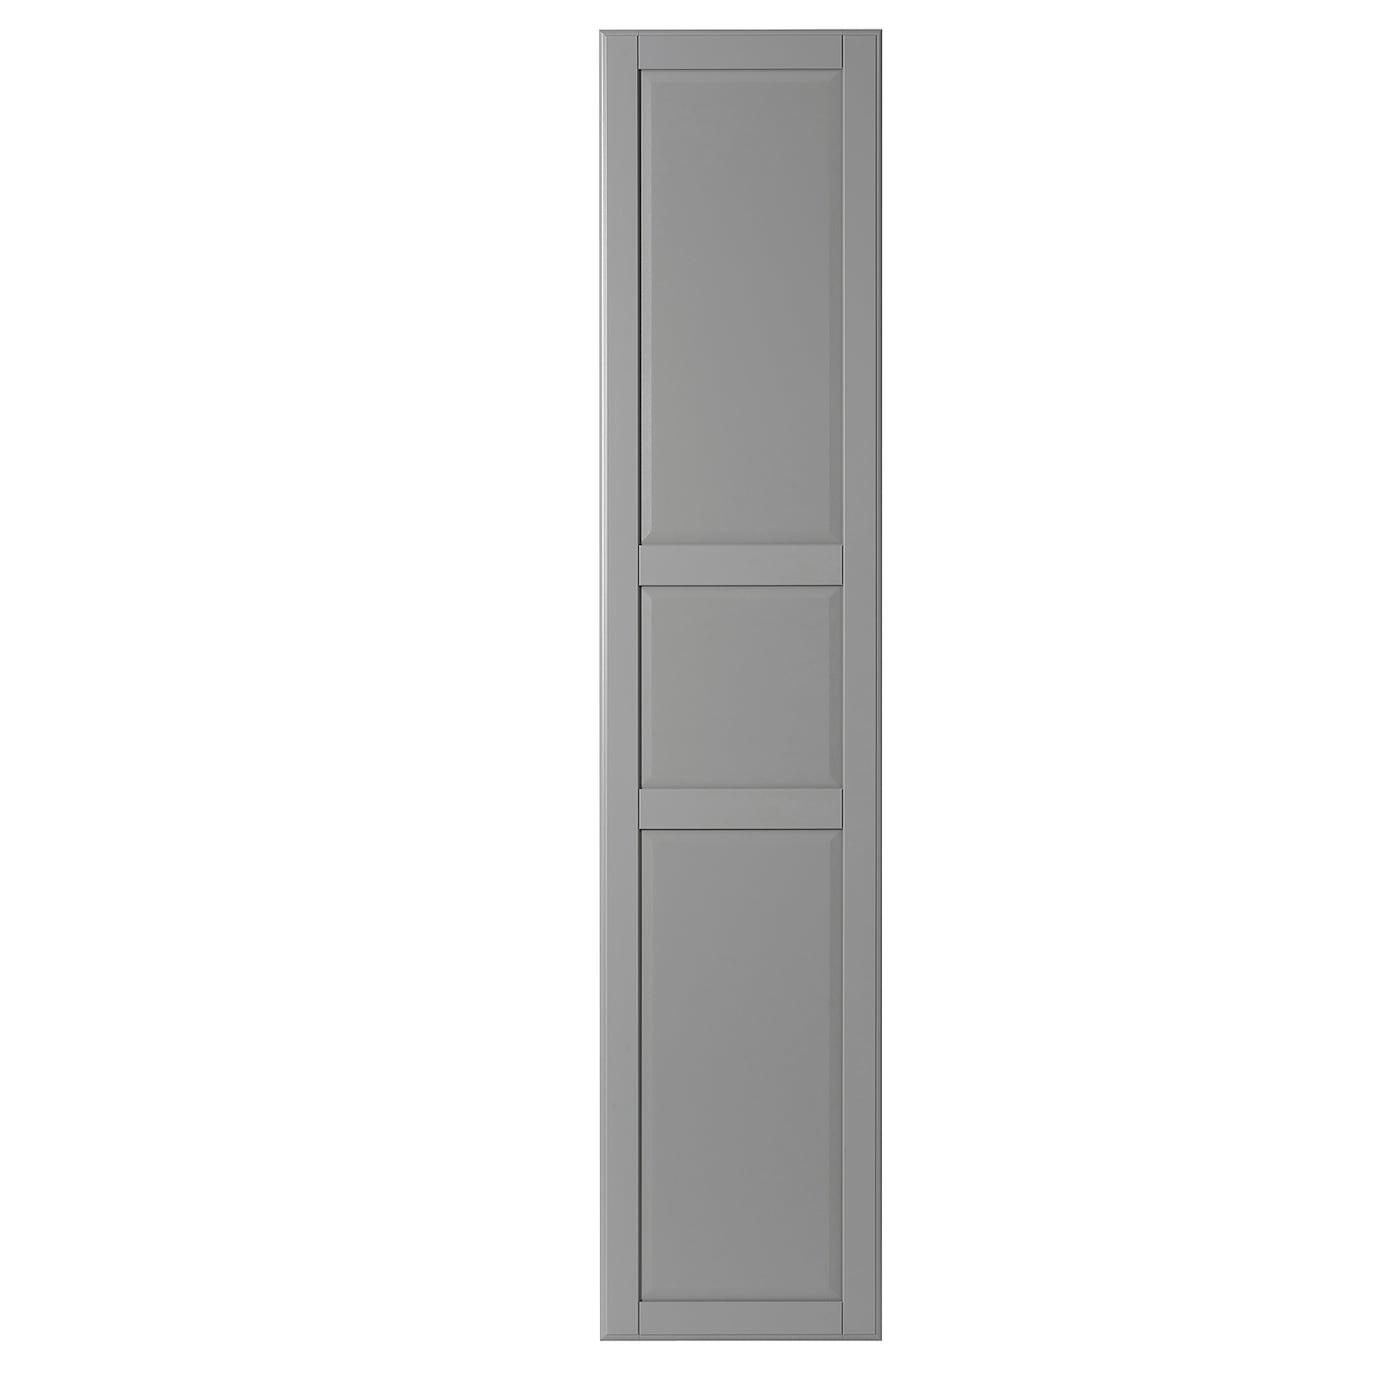 Дверь с петлями - TYSSEDAL  IKEA/  ТИССЕДАЛЬ ИКЕА,  229х50 см,  серый